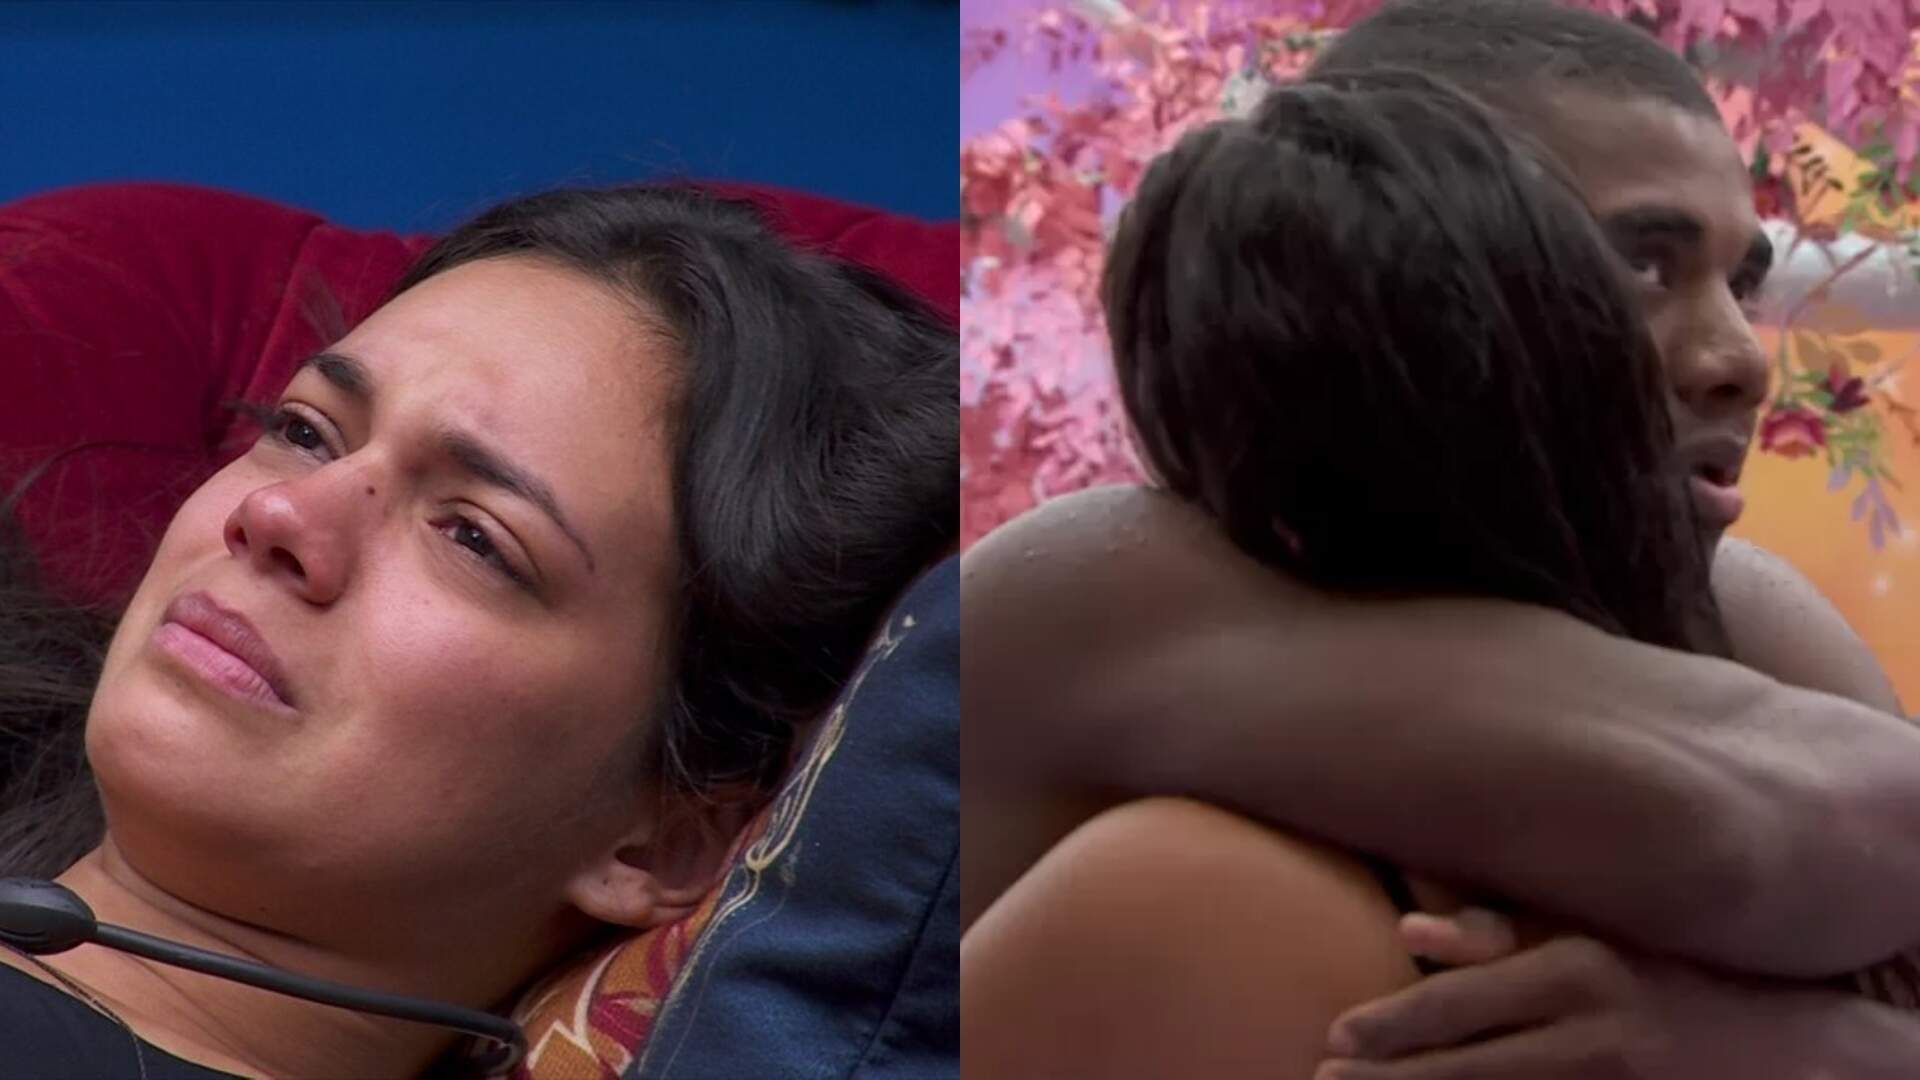 BBB 24: Finalista, Davi Brito consola Alane Dias que chora copiosamente com medo de berlinda